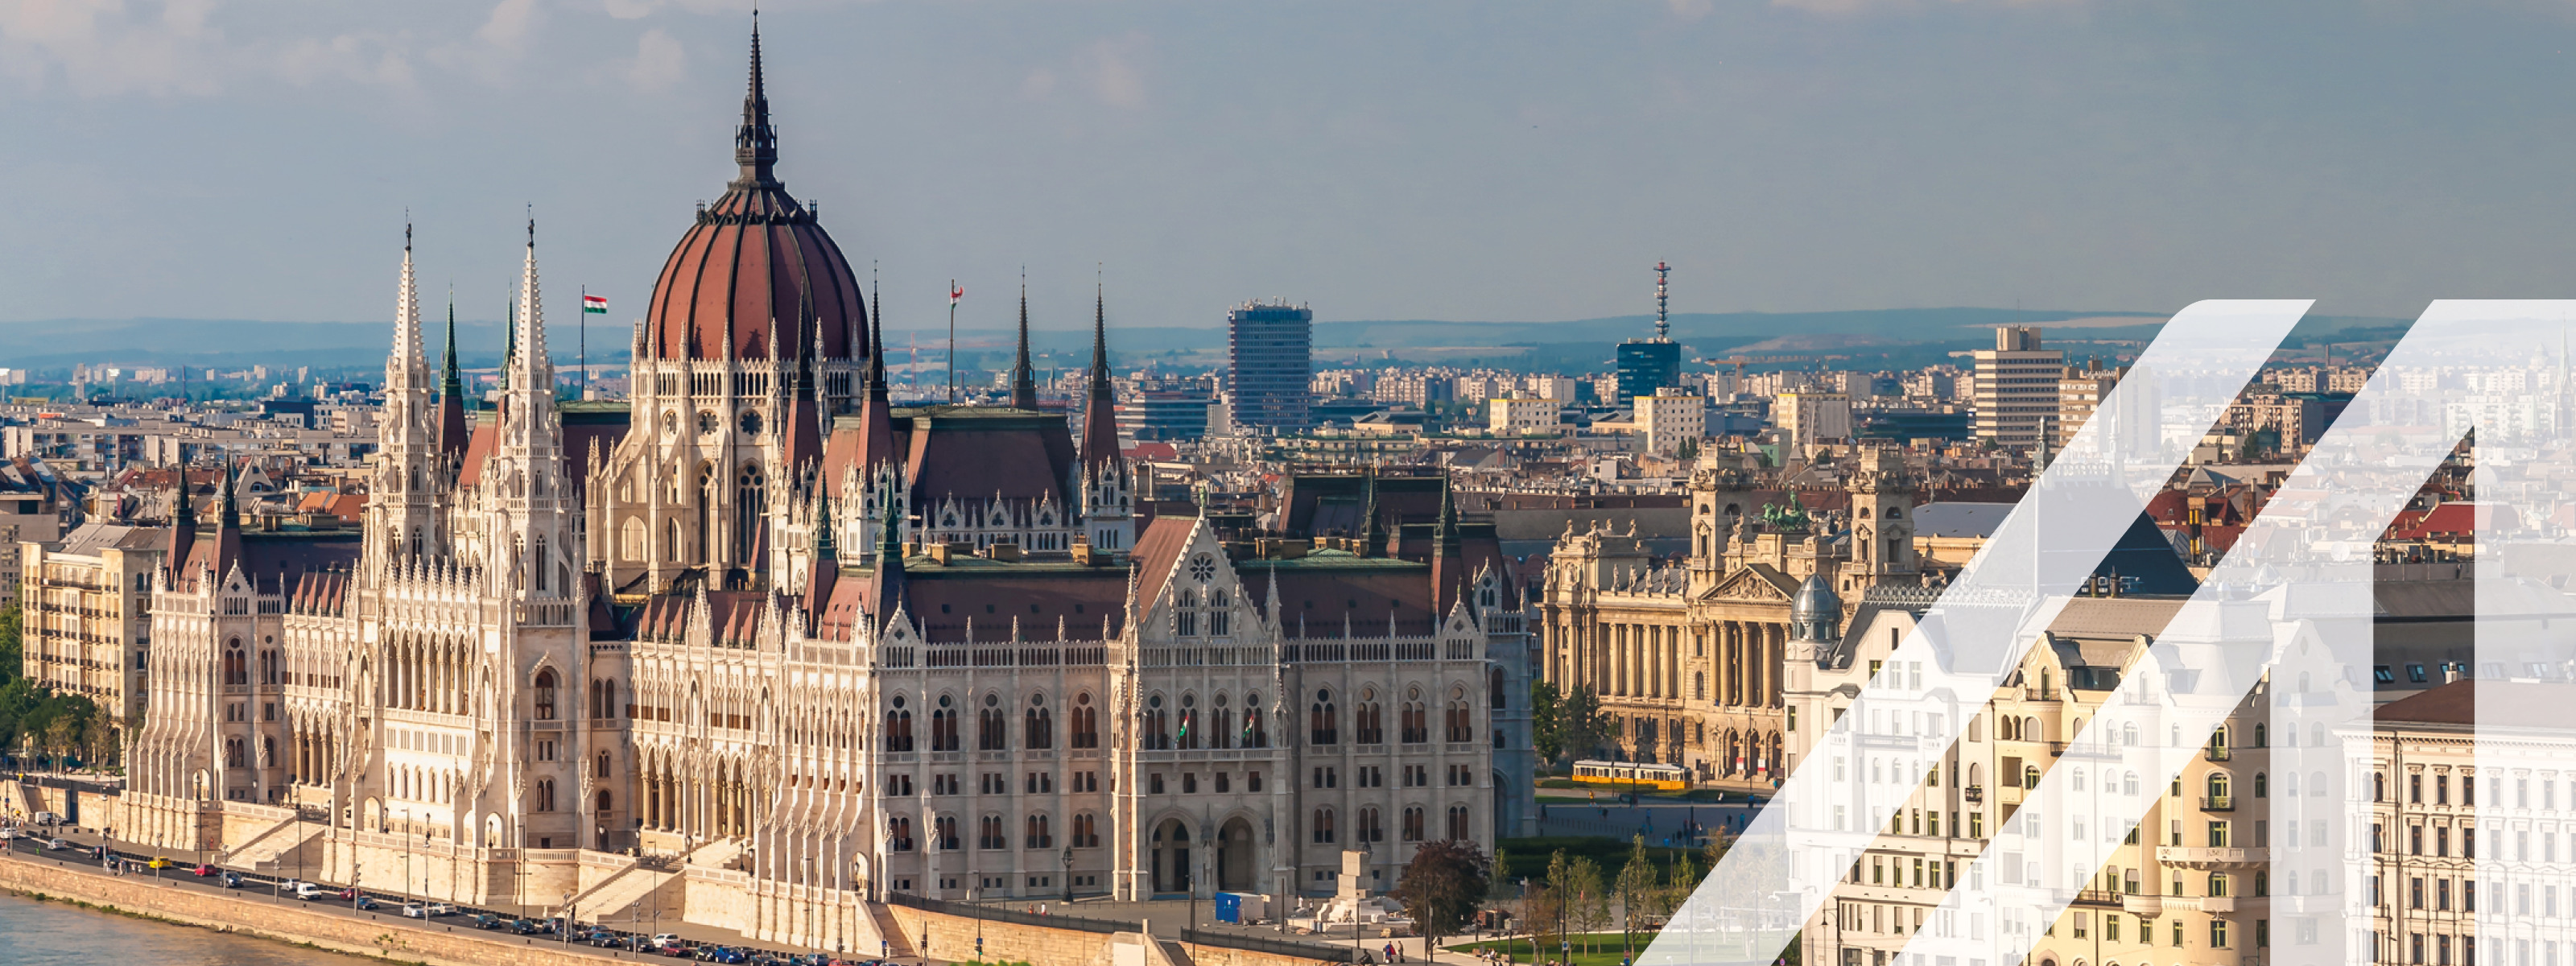 Blick auf das ungarische Parlament in Budapest, gelegen an der Donau